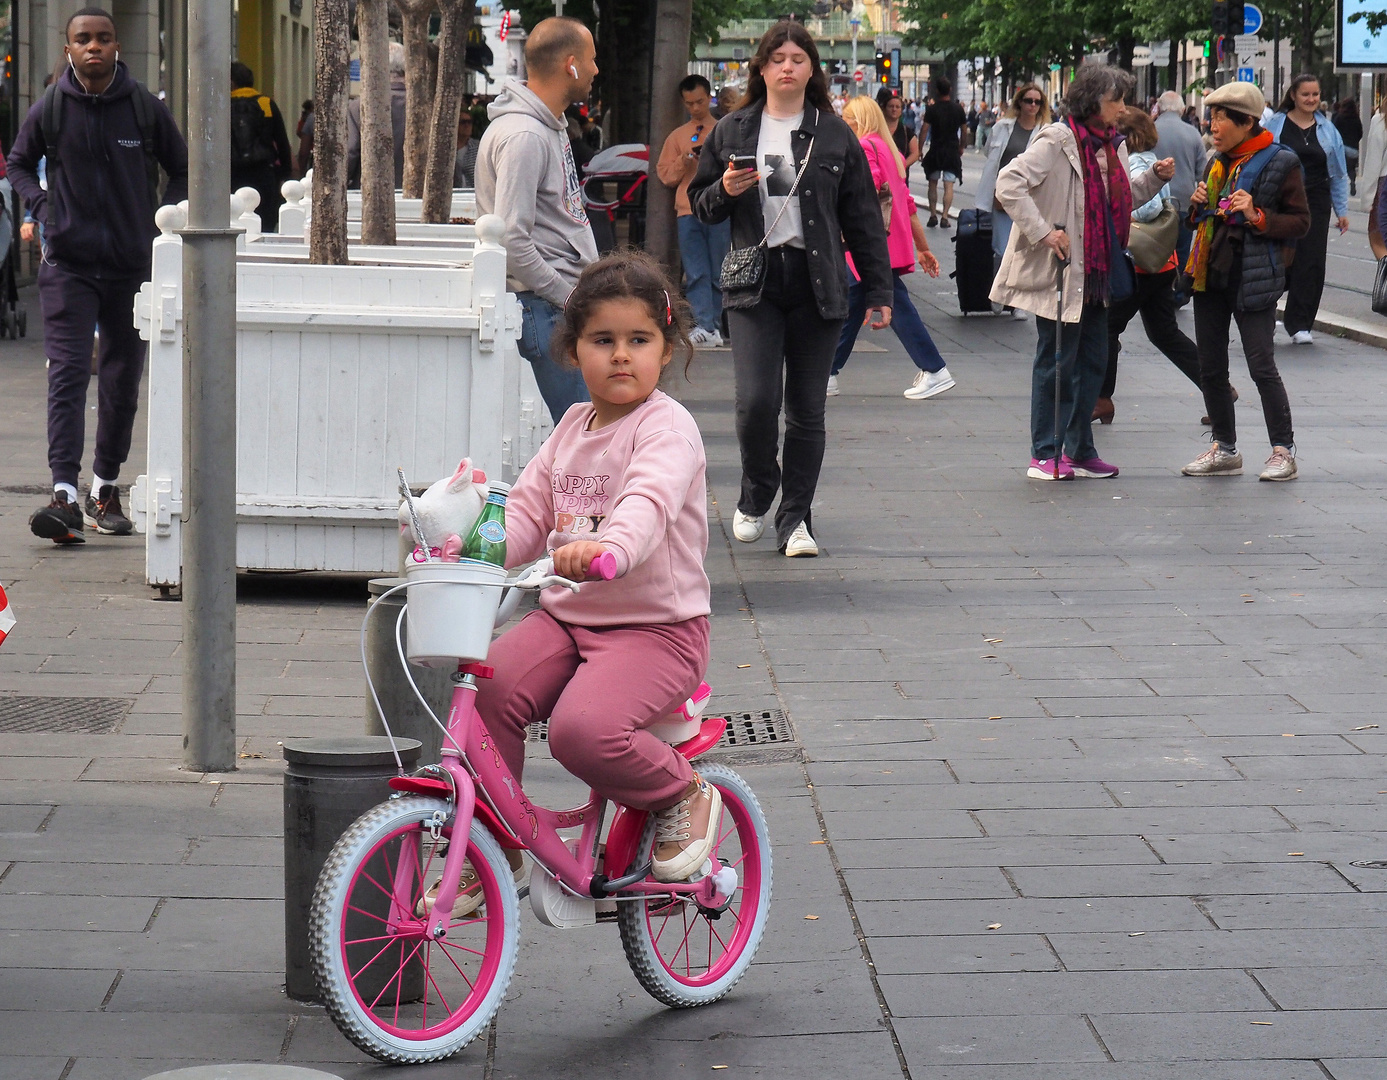 La bicyclette et la jeune cycliste roses